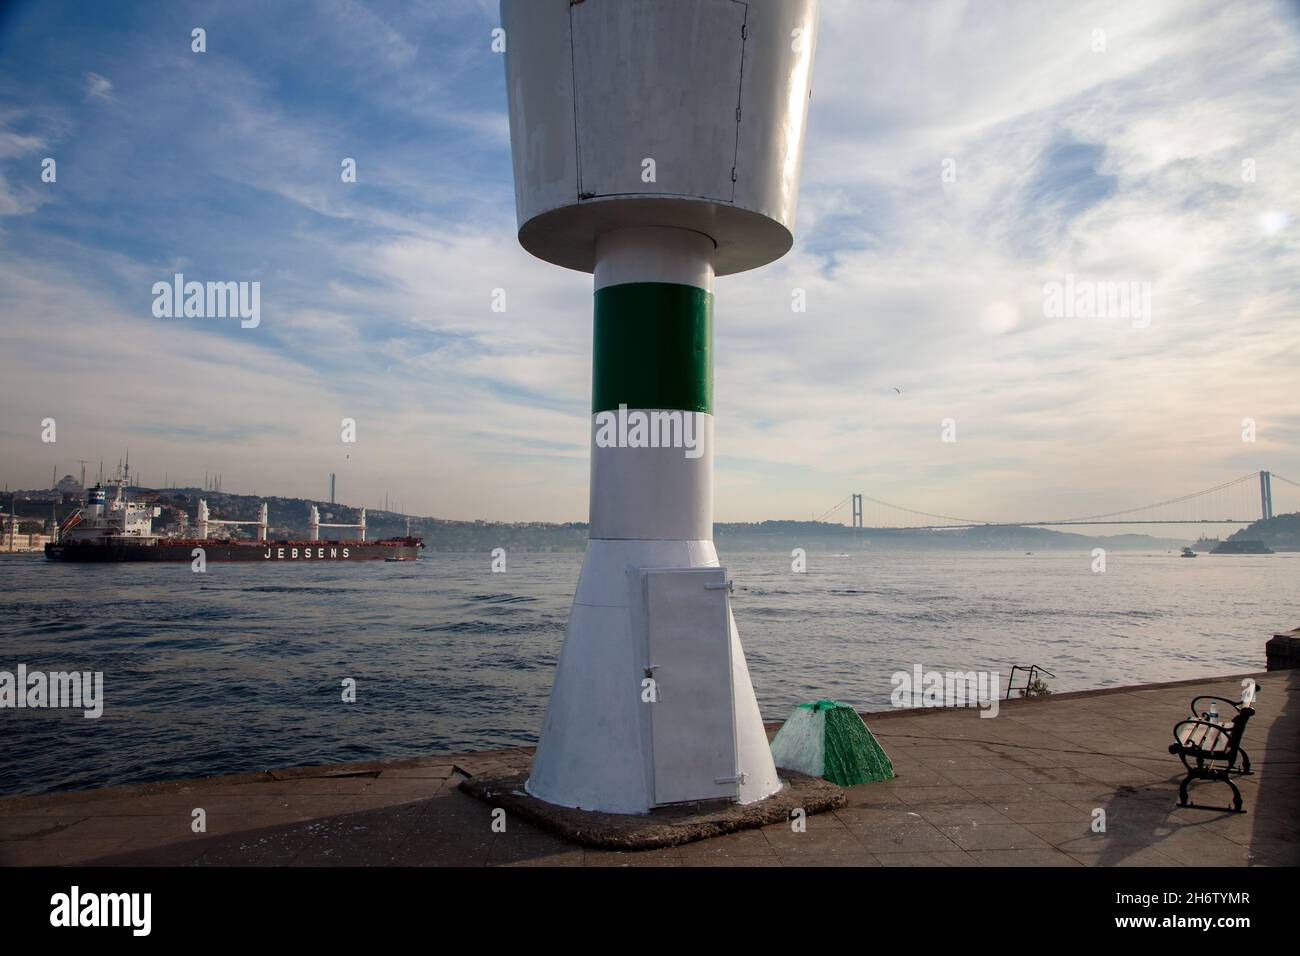 Besiktas,Istanbul,Turkey - 10-23-2017:Akintiburnu lighthouse and Bosphorus view Stock Photo